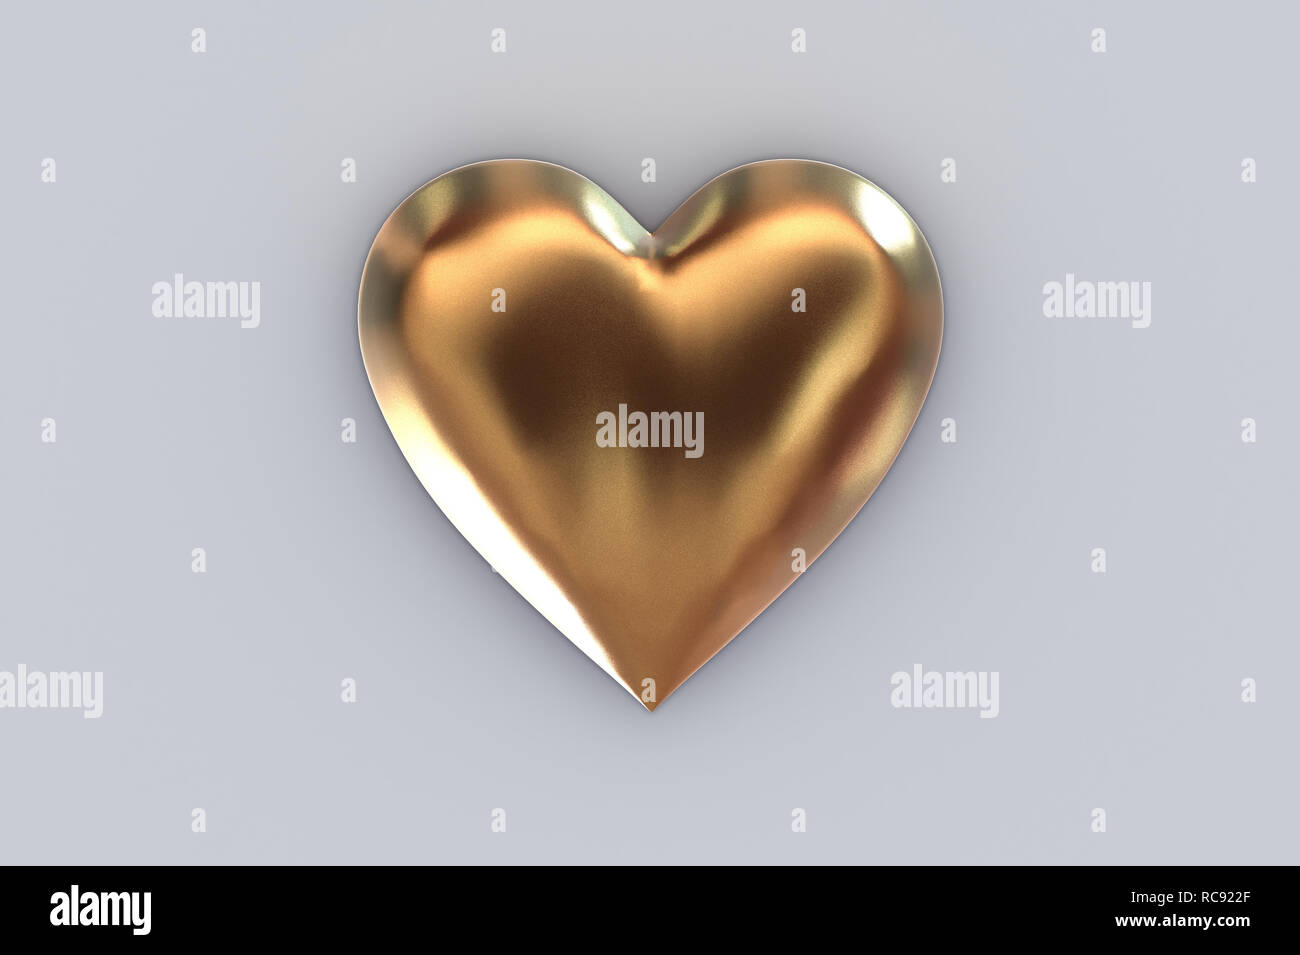 Resumen del día de San Valentín de fondo en 3D con gran corazón metálico dorado sobre fondo gris Foto de stock